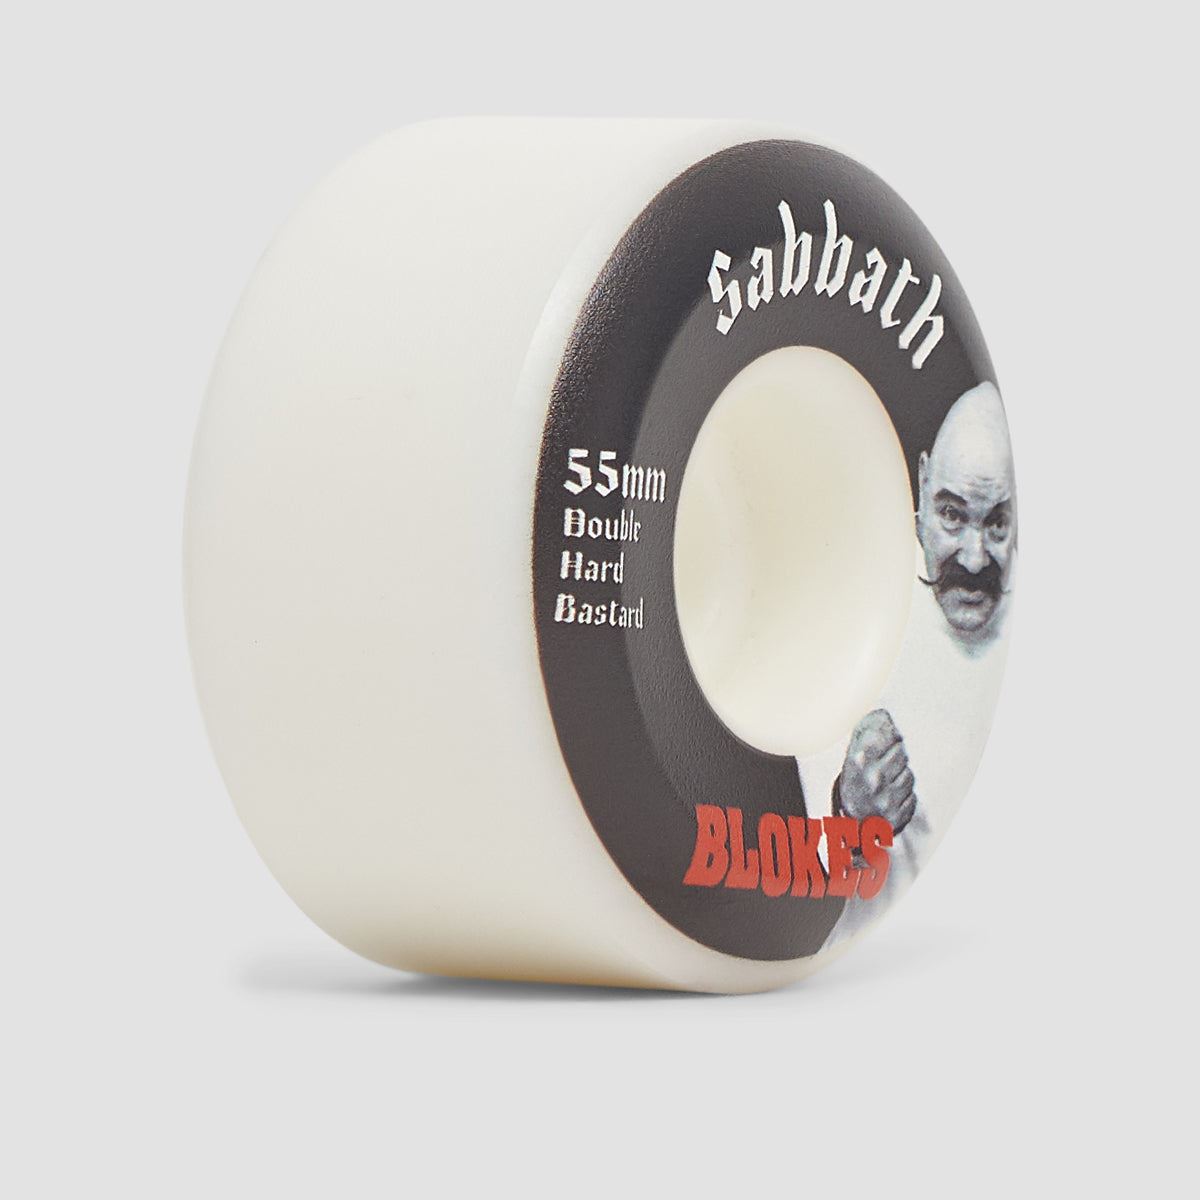 Sabbath Blokes Conical DHB 101A Skateboard Wheels 55mm